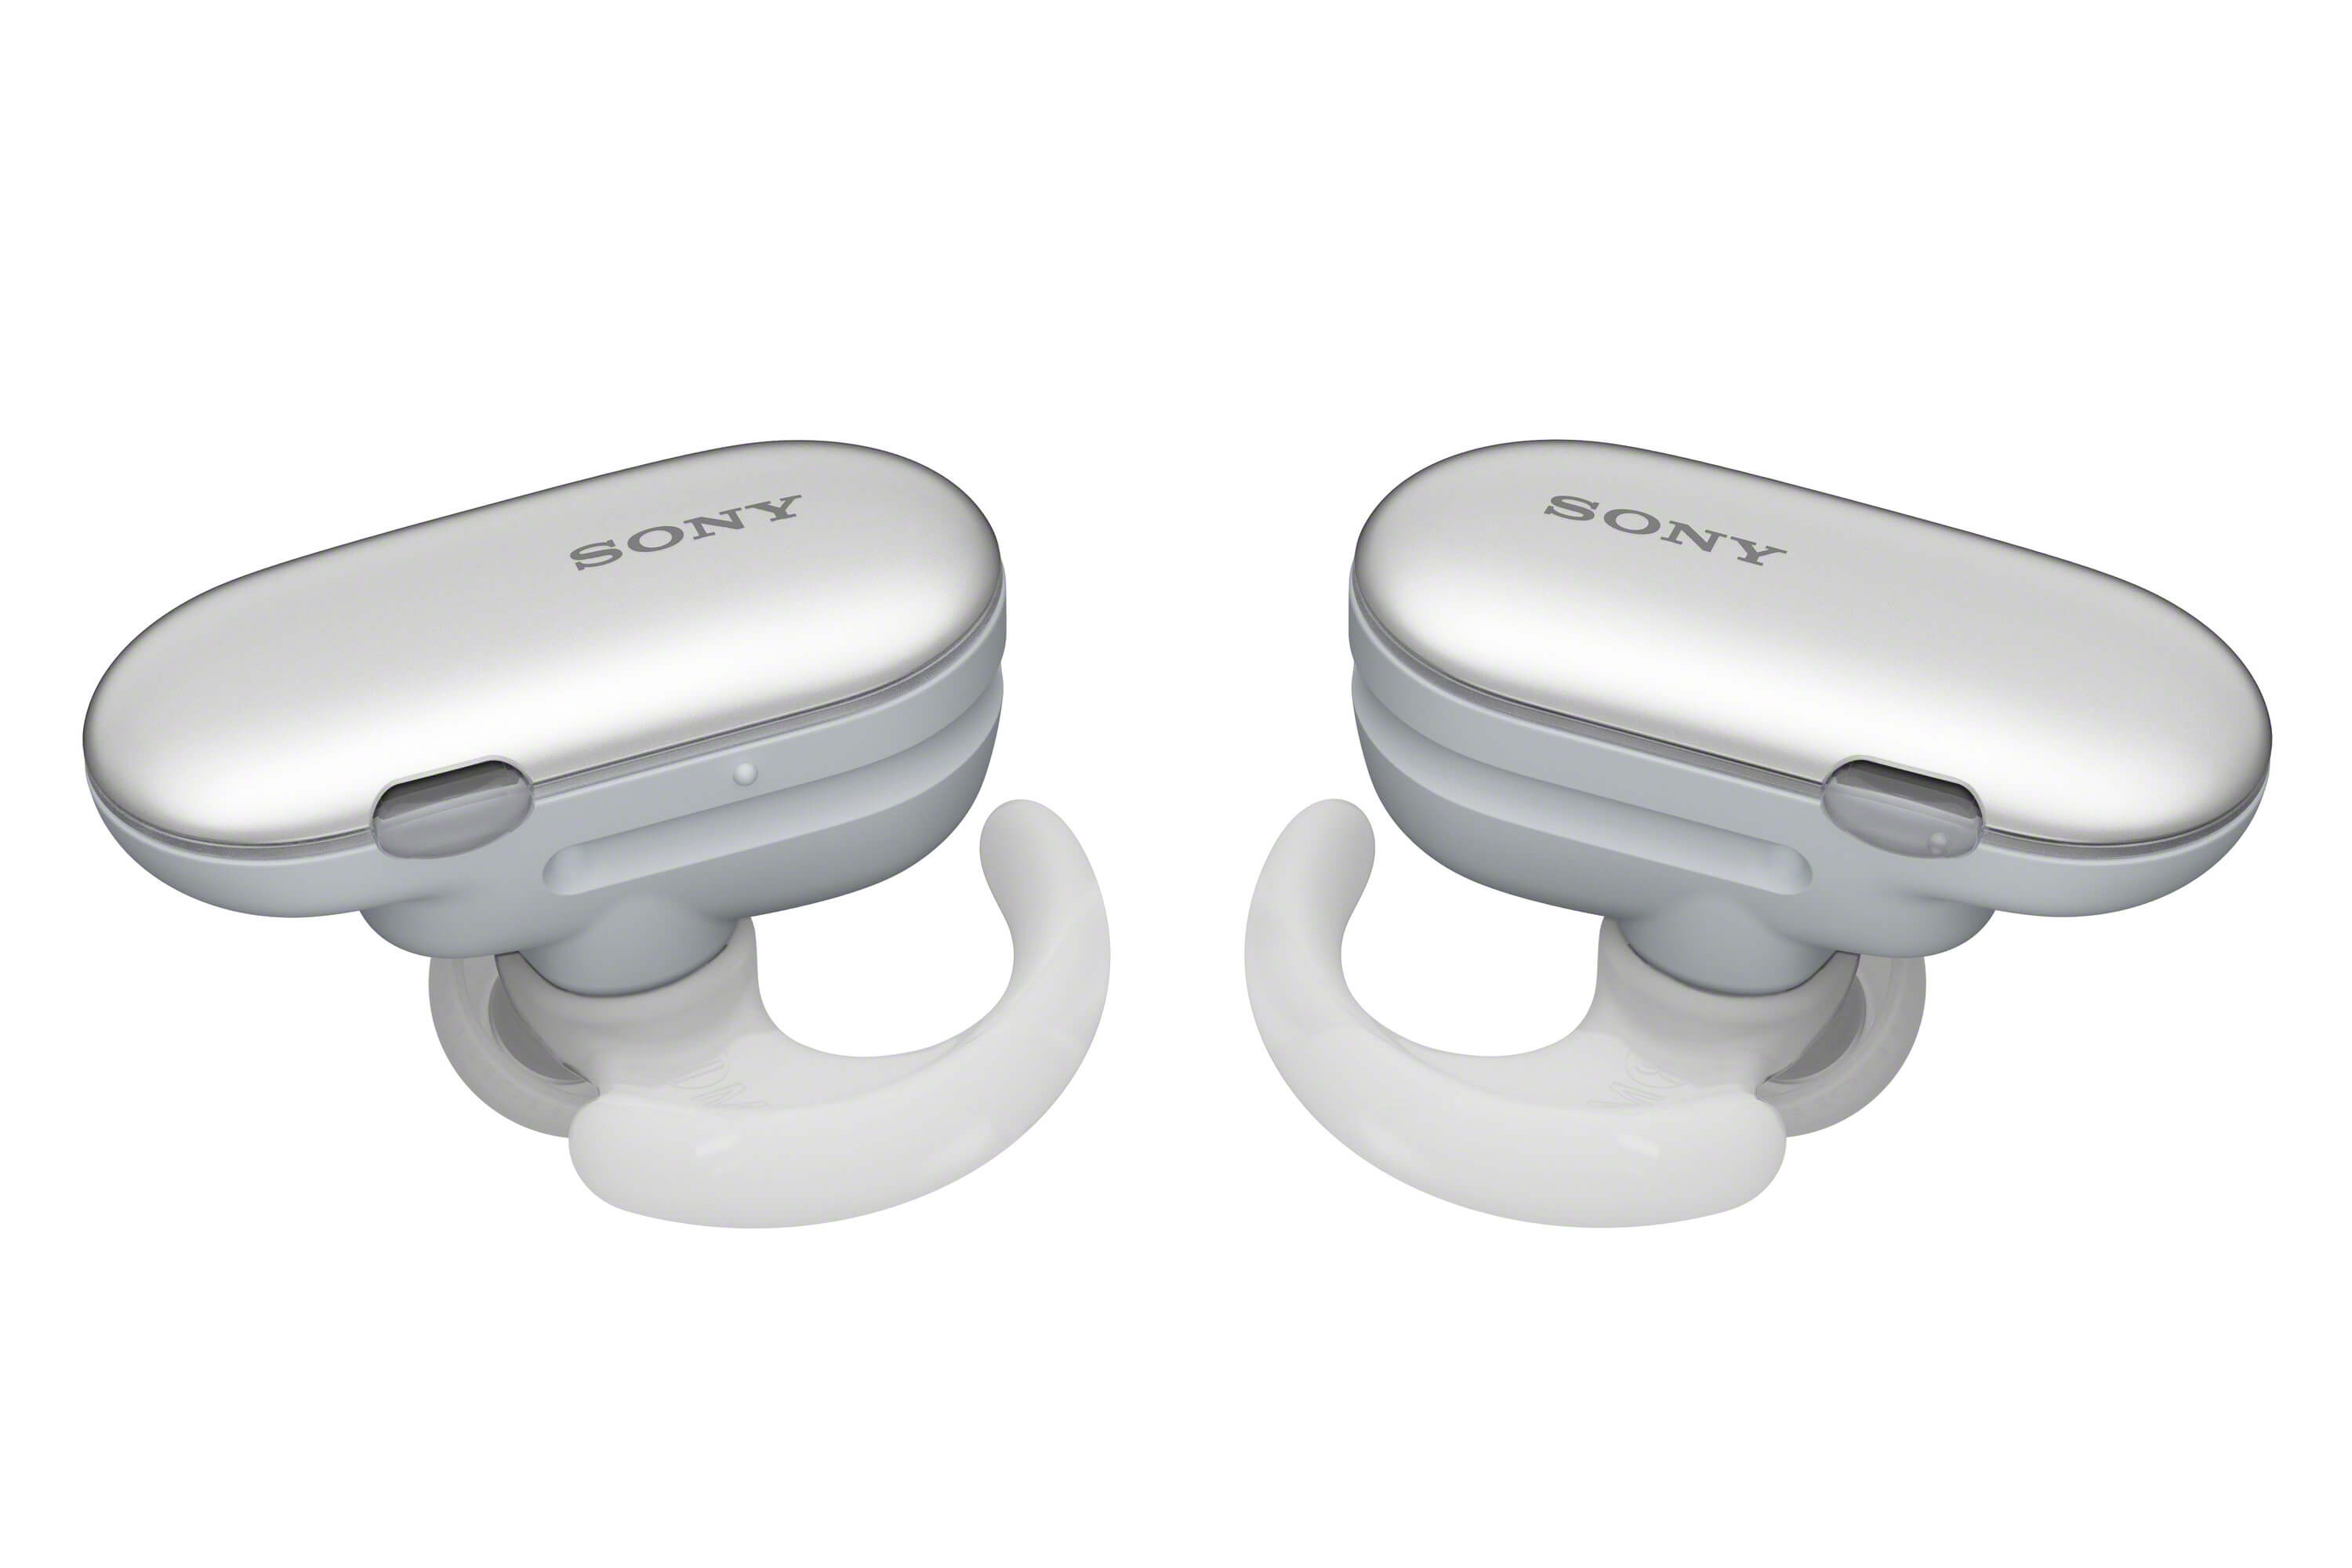 WF-SP900 - 真無線運動耳機(粉) - Sony 台灣官方購物網站- Sony Store